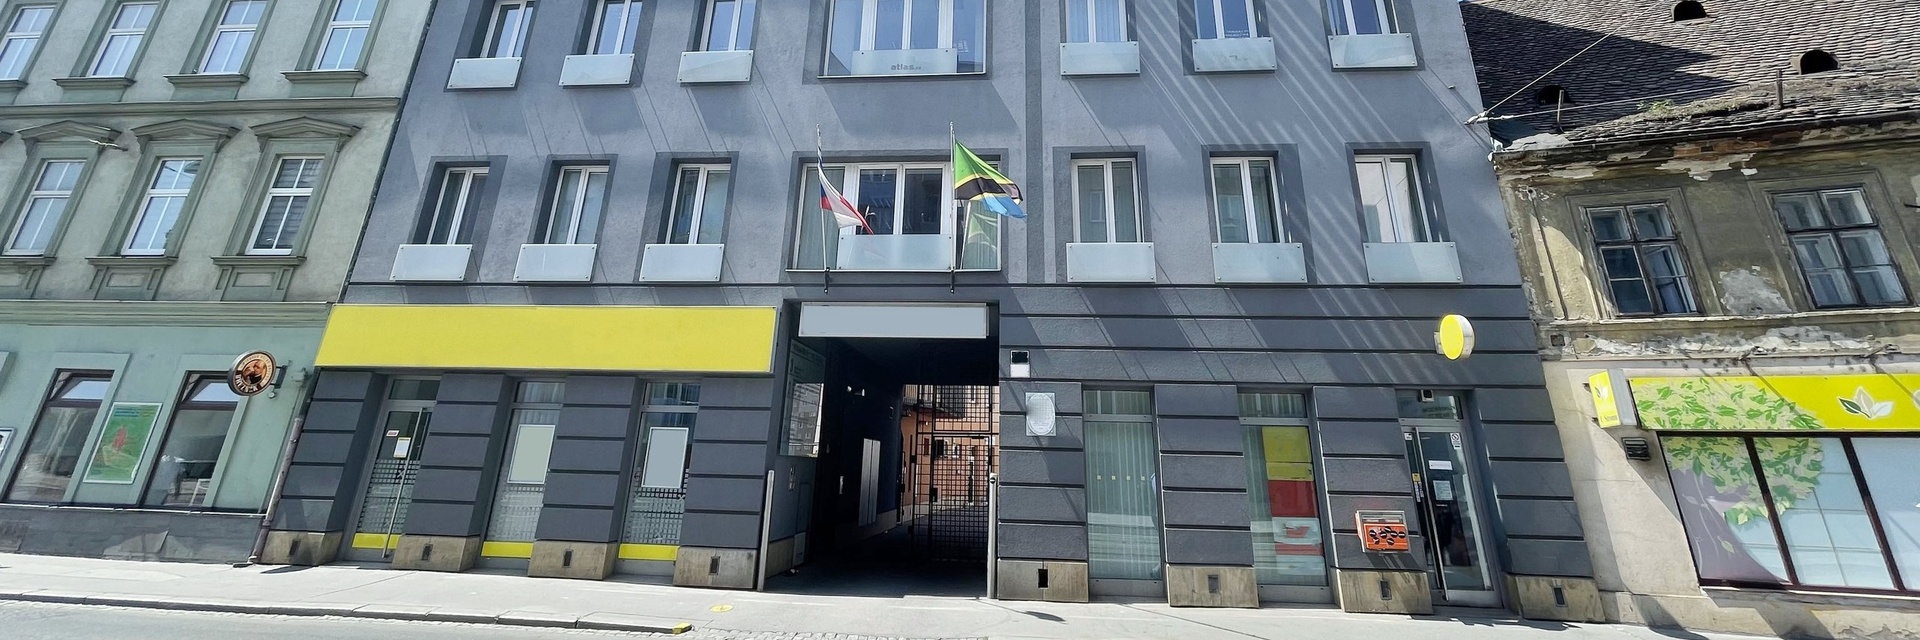 Pronájem kancelářského uzavřeného celku 79 m² ve 4.NP, ulice Křížová, Brno